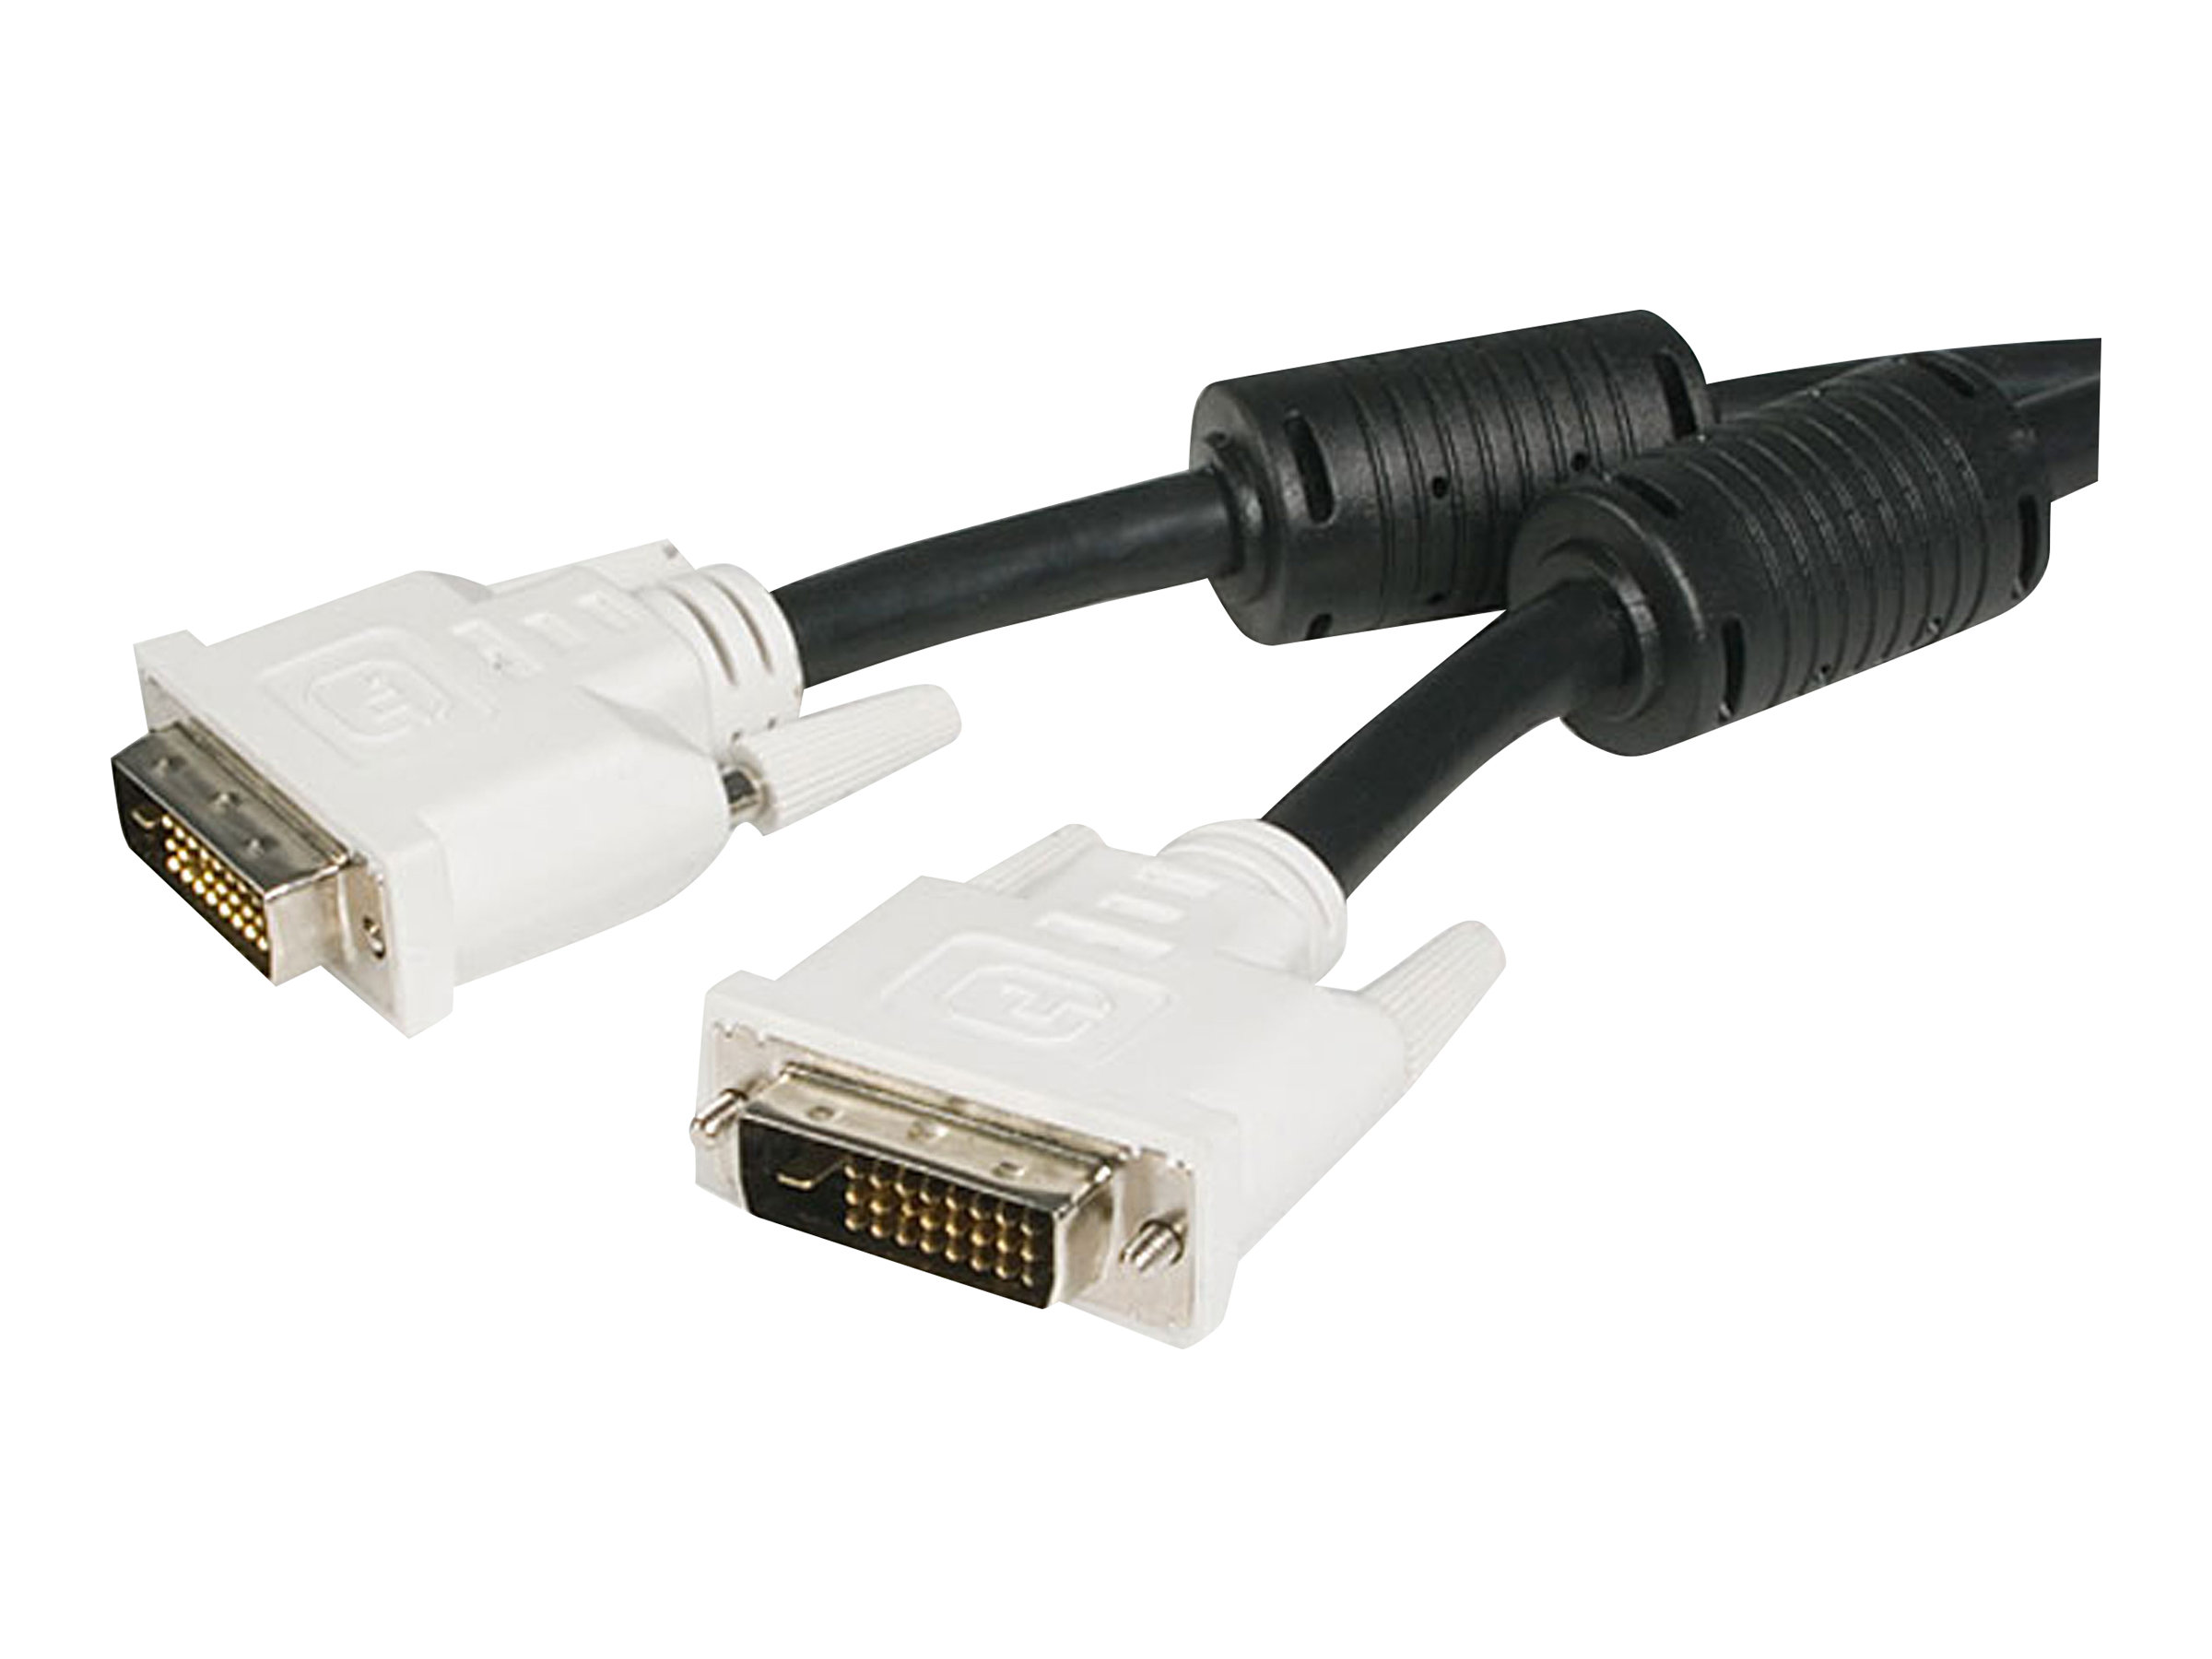 StarTech.com DVI-D Dual Link Kabel 3m (Stecker/Stecker) - DVI 24+1 Pin Monitorkabel Dual Link - DVI Anschlusskabel mit Ferritkernen - DVI-Kabel - Dual Link - DVI-D (M) zu DVI-D (M)